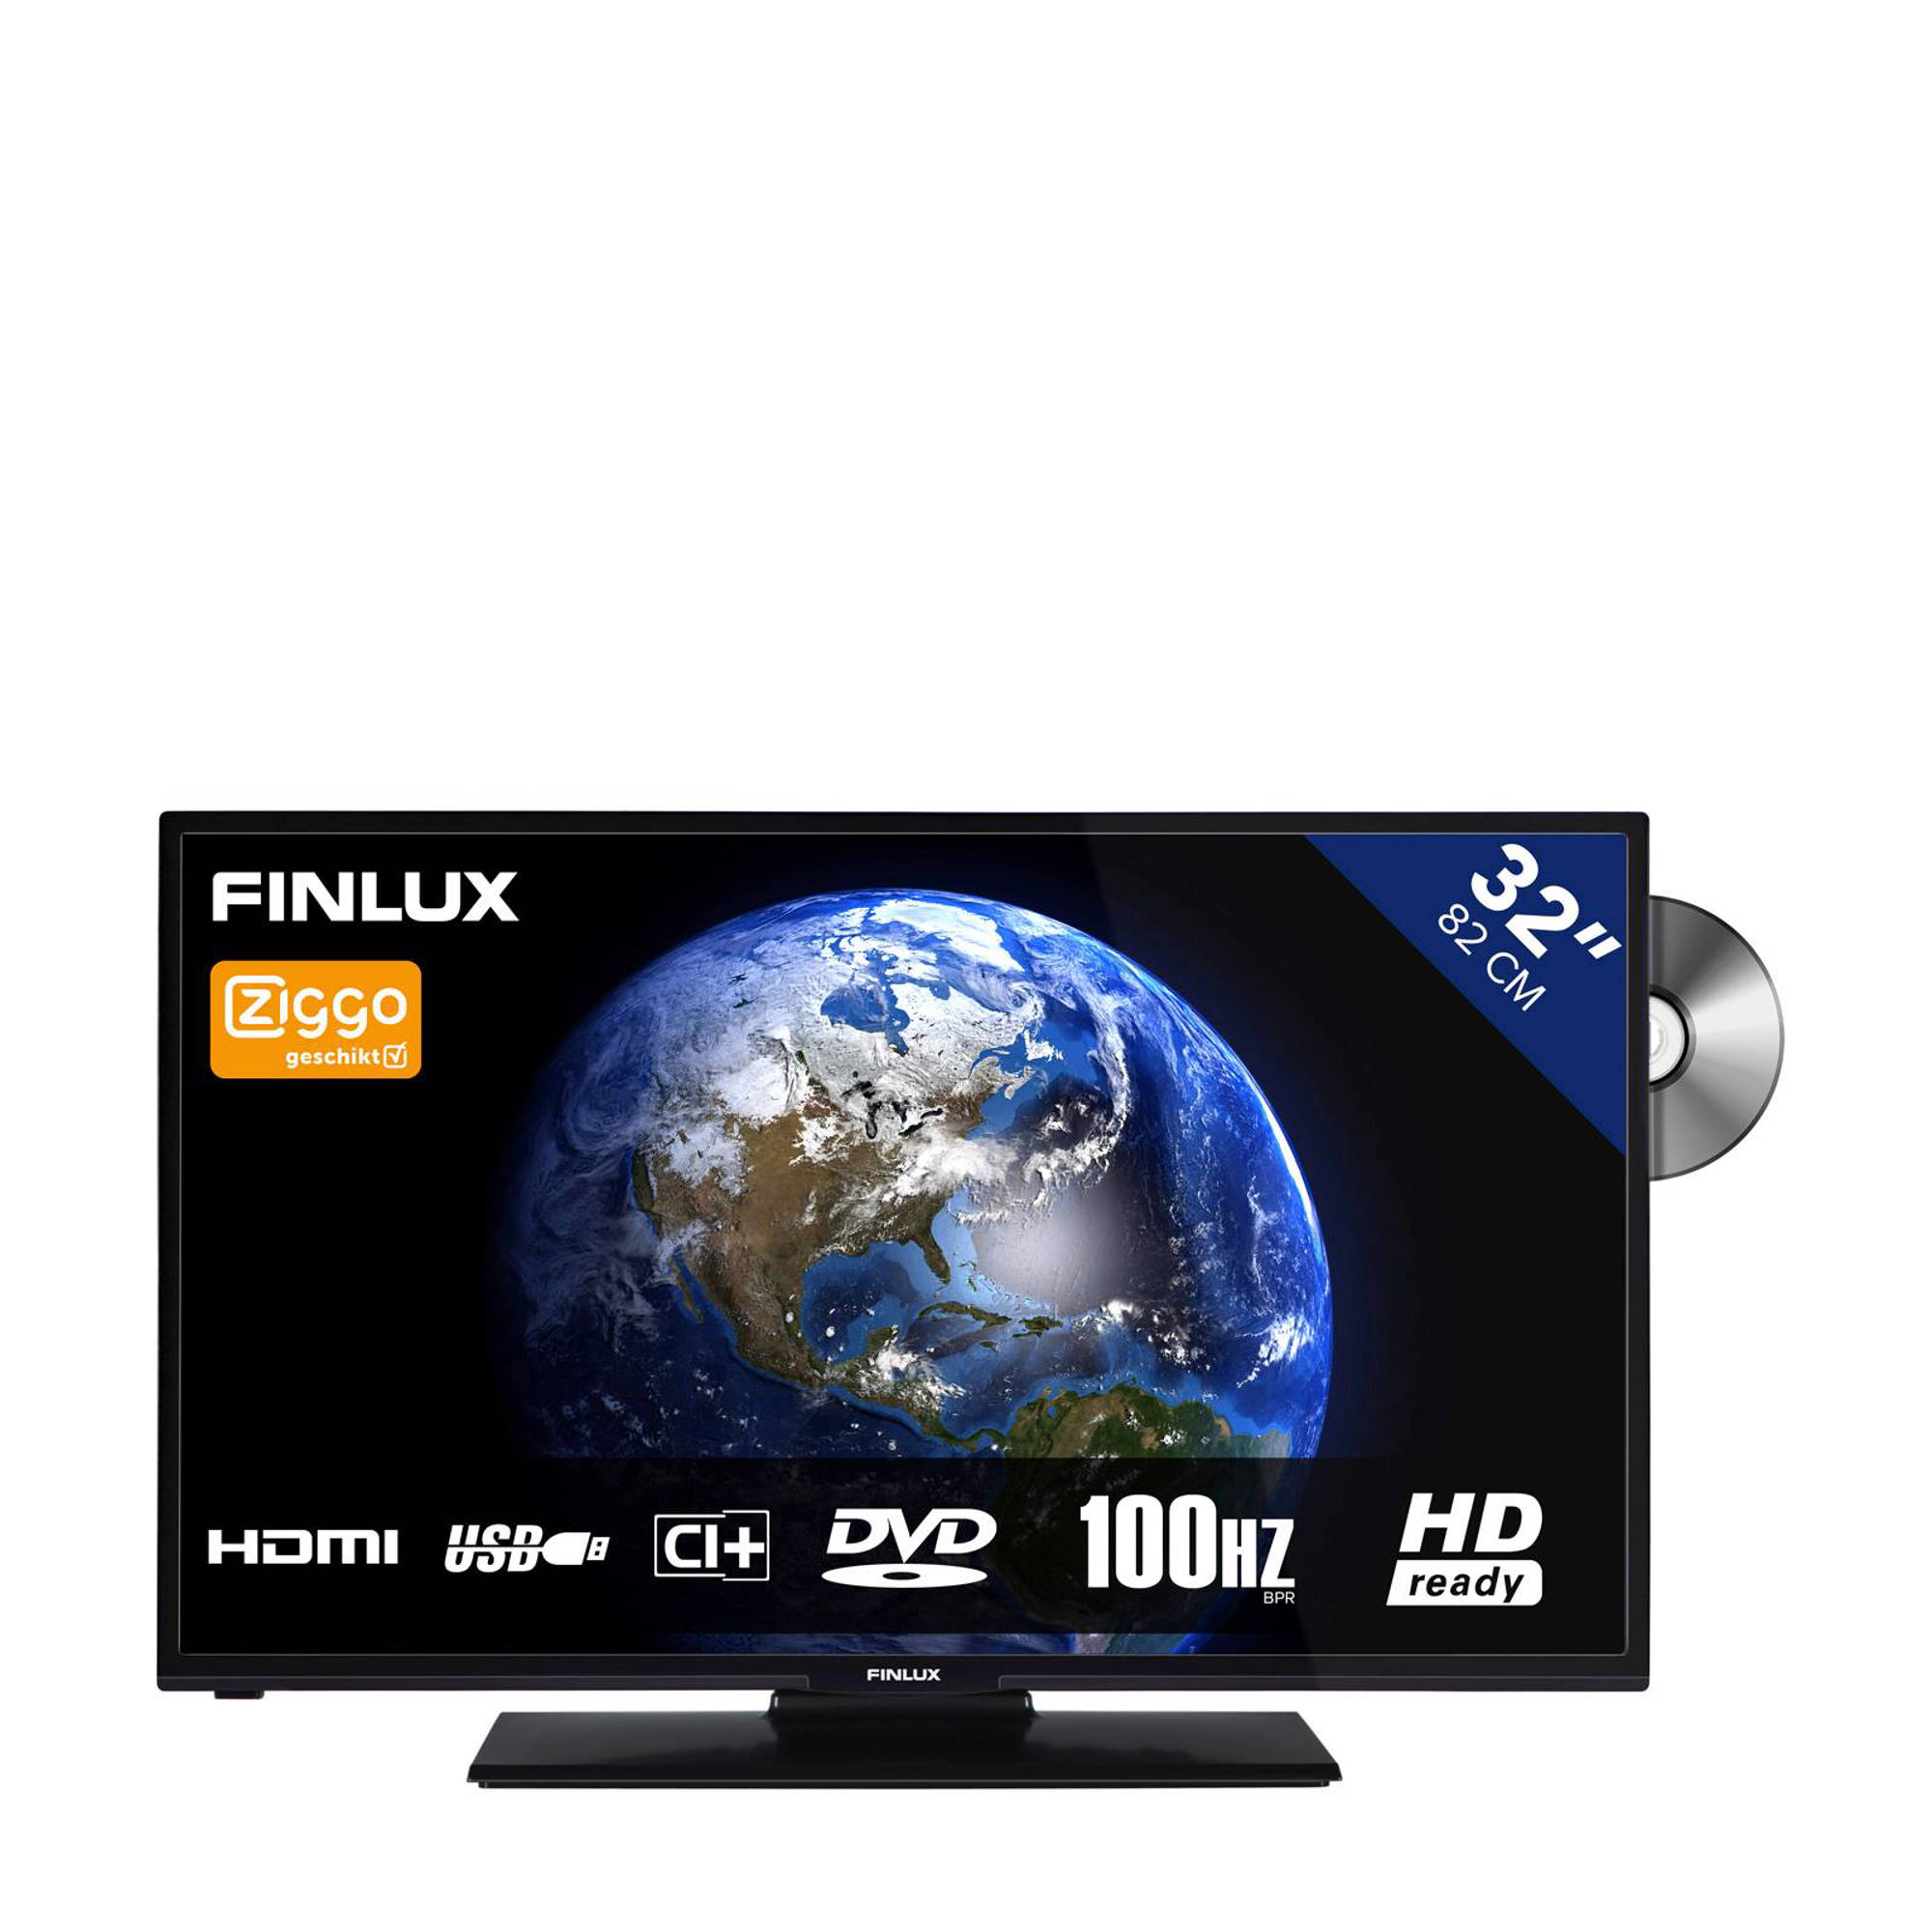 Een deel Laat je zien De slaapkamer schoonmaken Finlux FL3222 HD Ready tv met ingebouwde DVD speler - Outletkopen